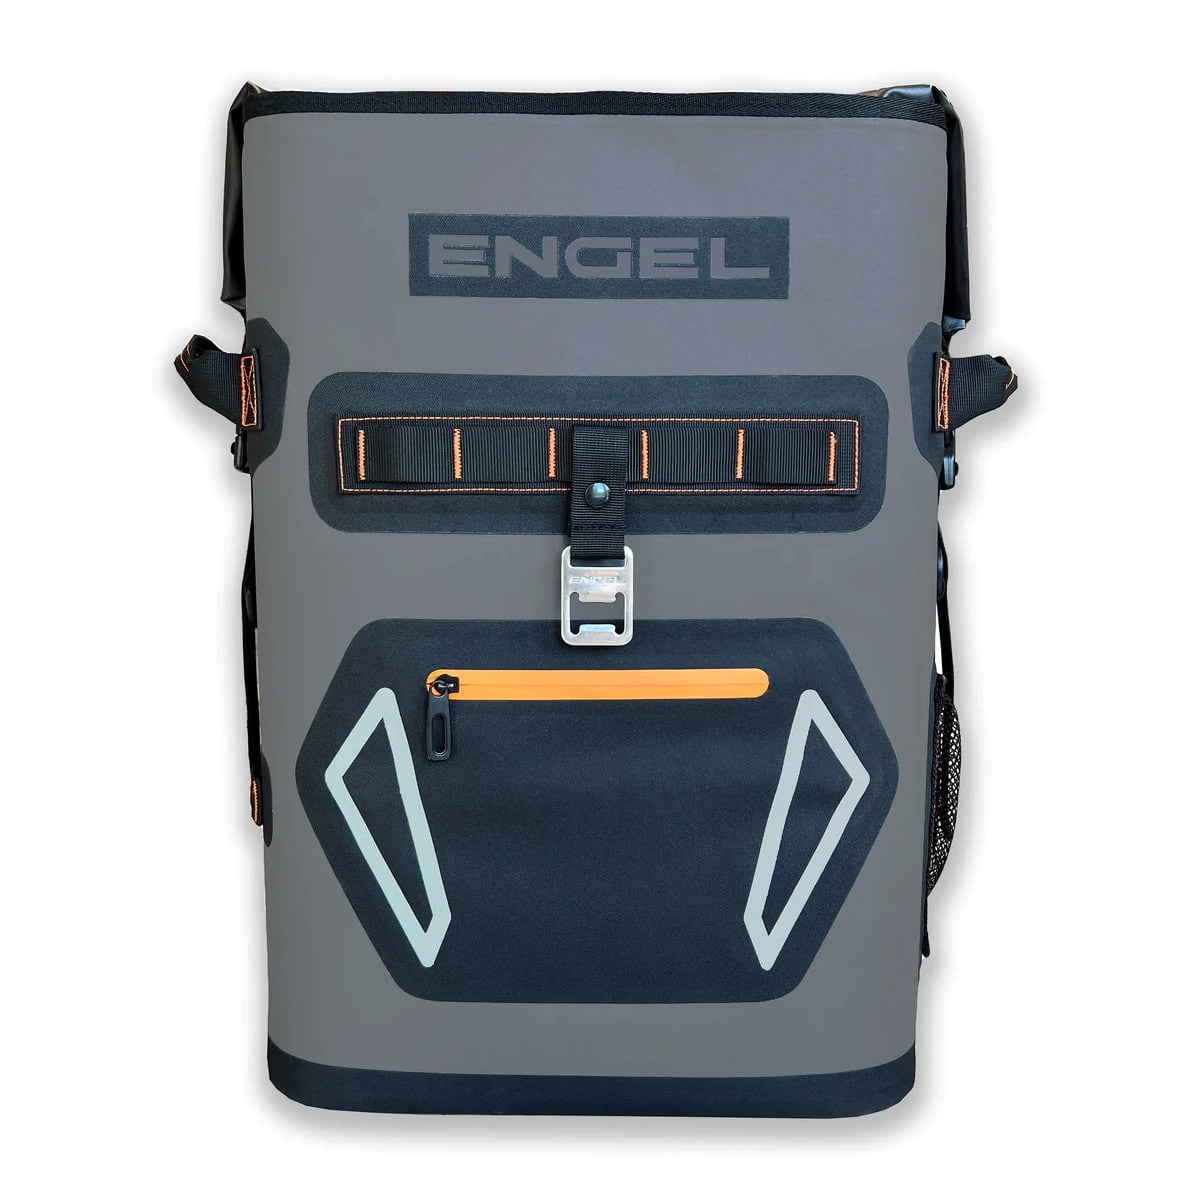 Engel BP25 High-Performance Backpack Cooler orange front.